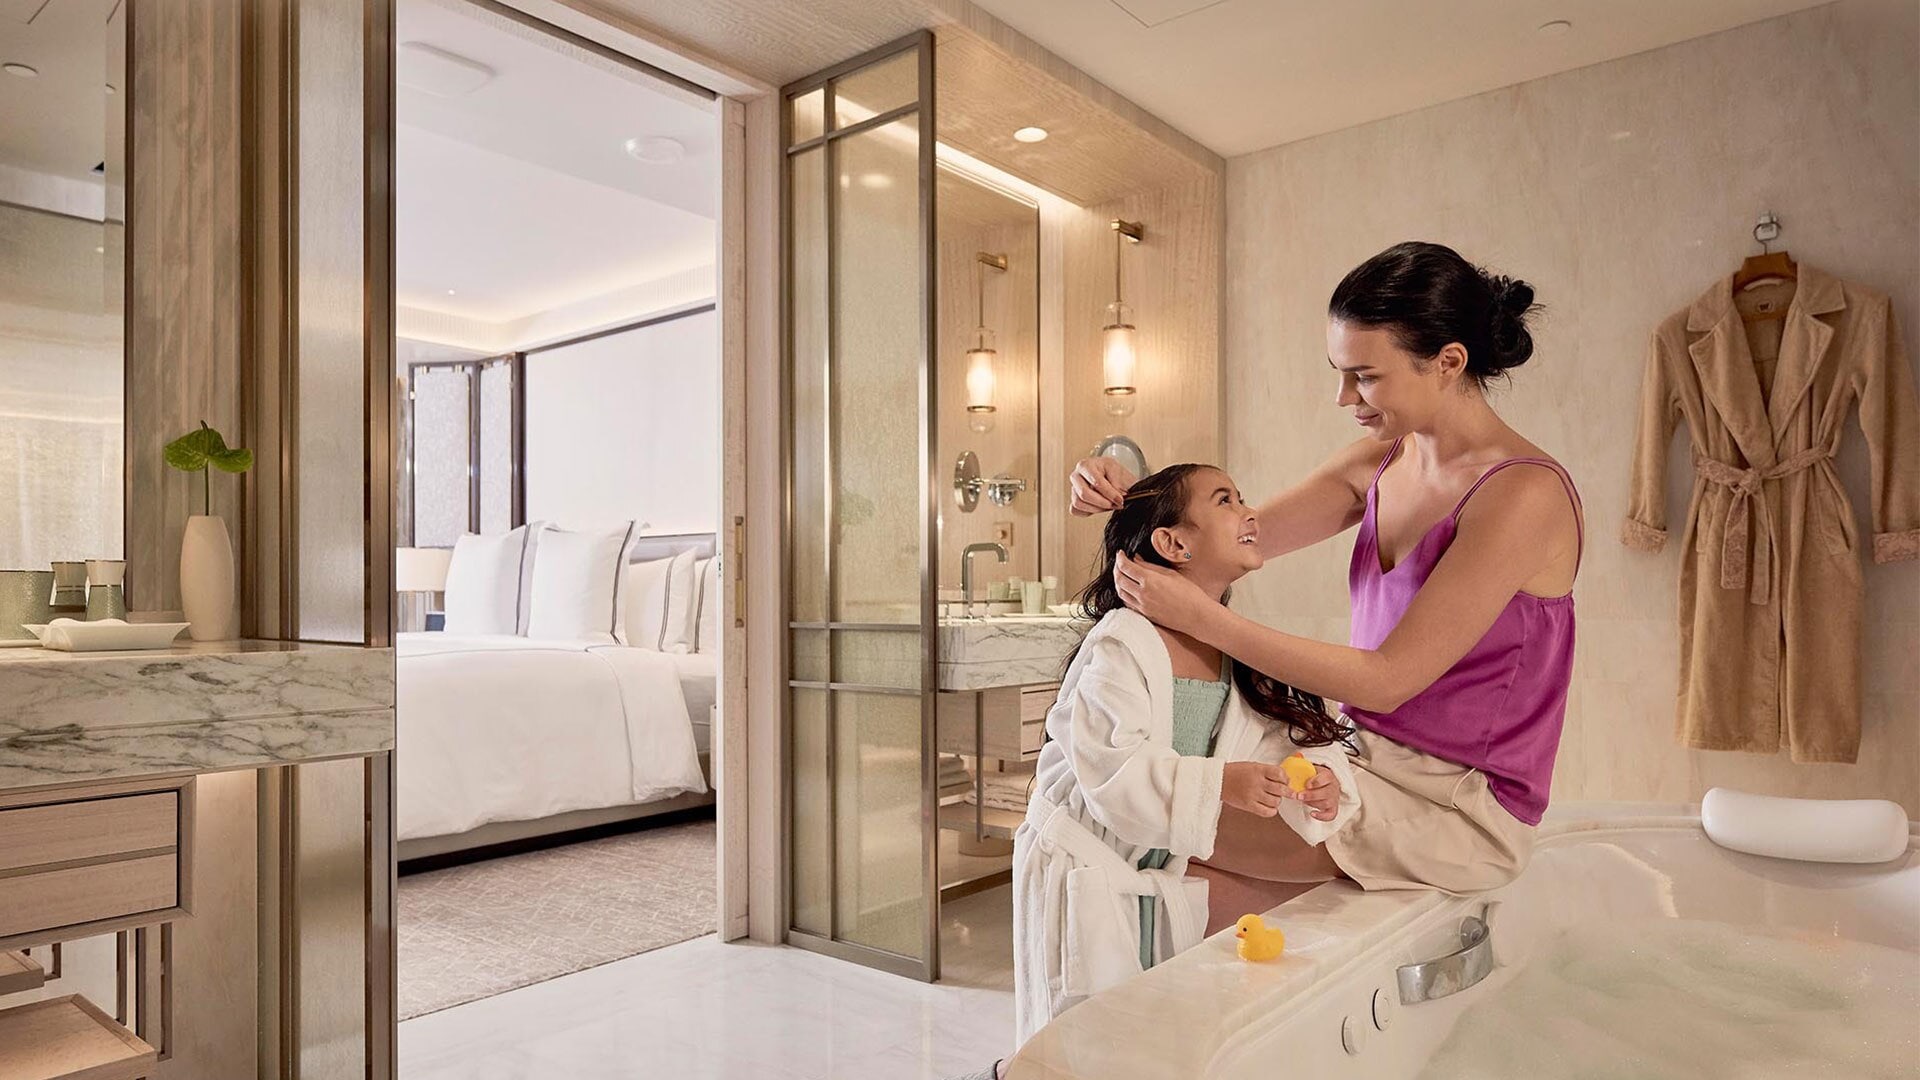 싱가포르 호텔의 가족 객실인 샌즈 패밀리 스위트의 욕실에 있는 어머니와 딸